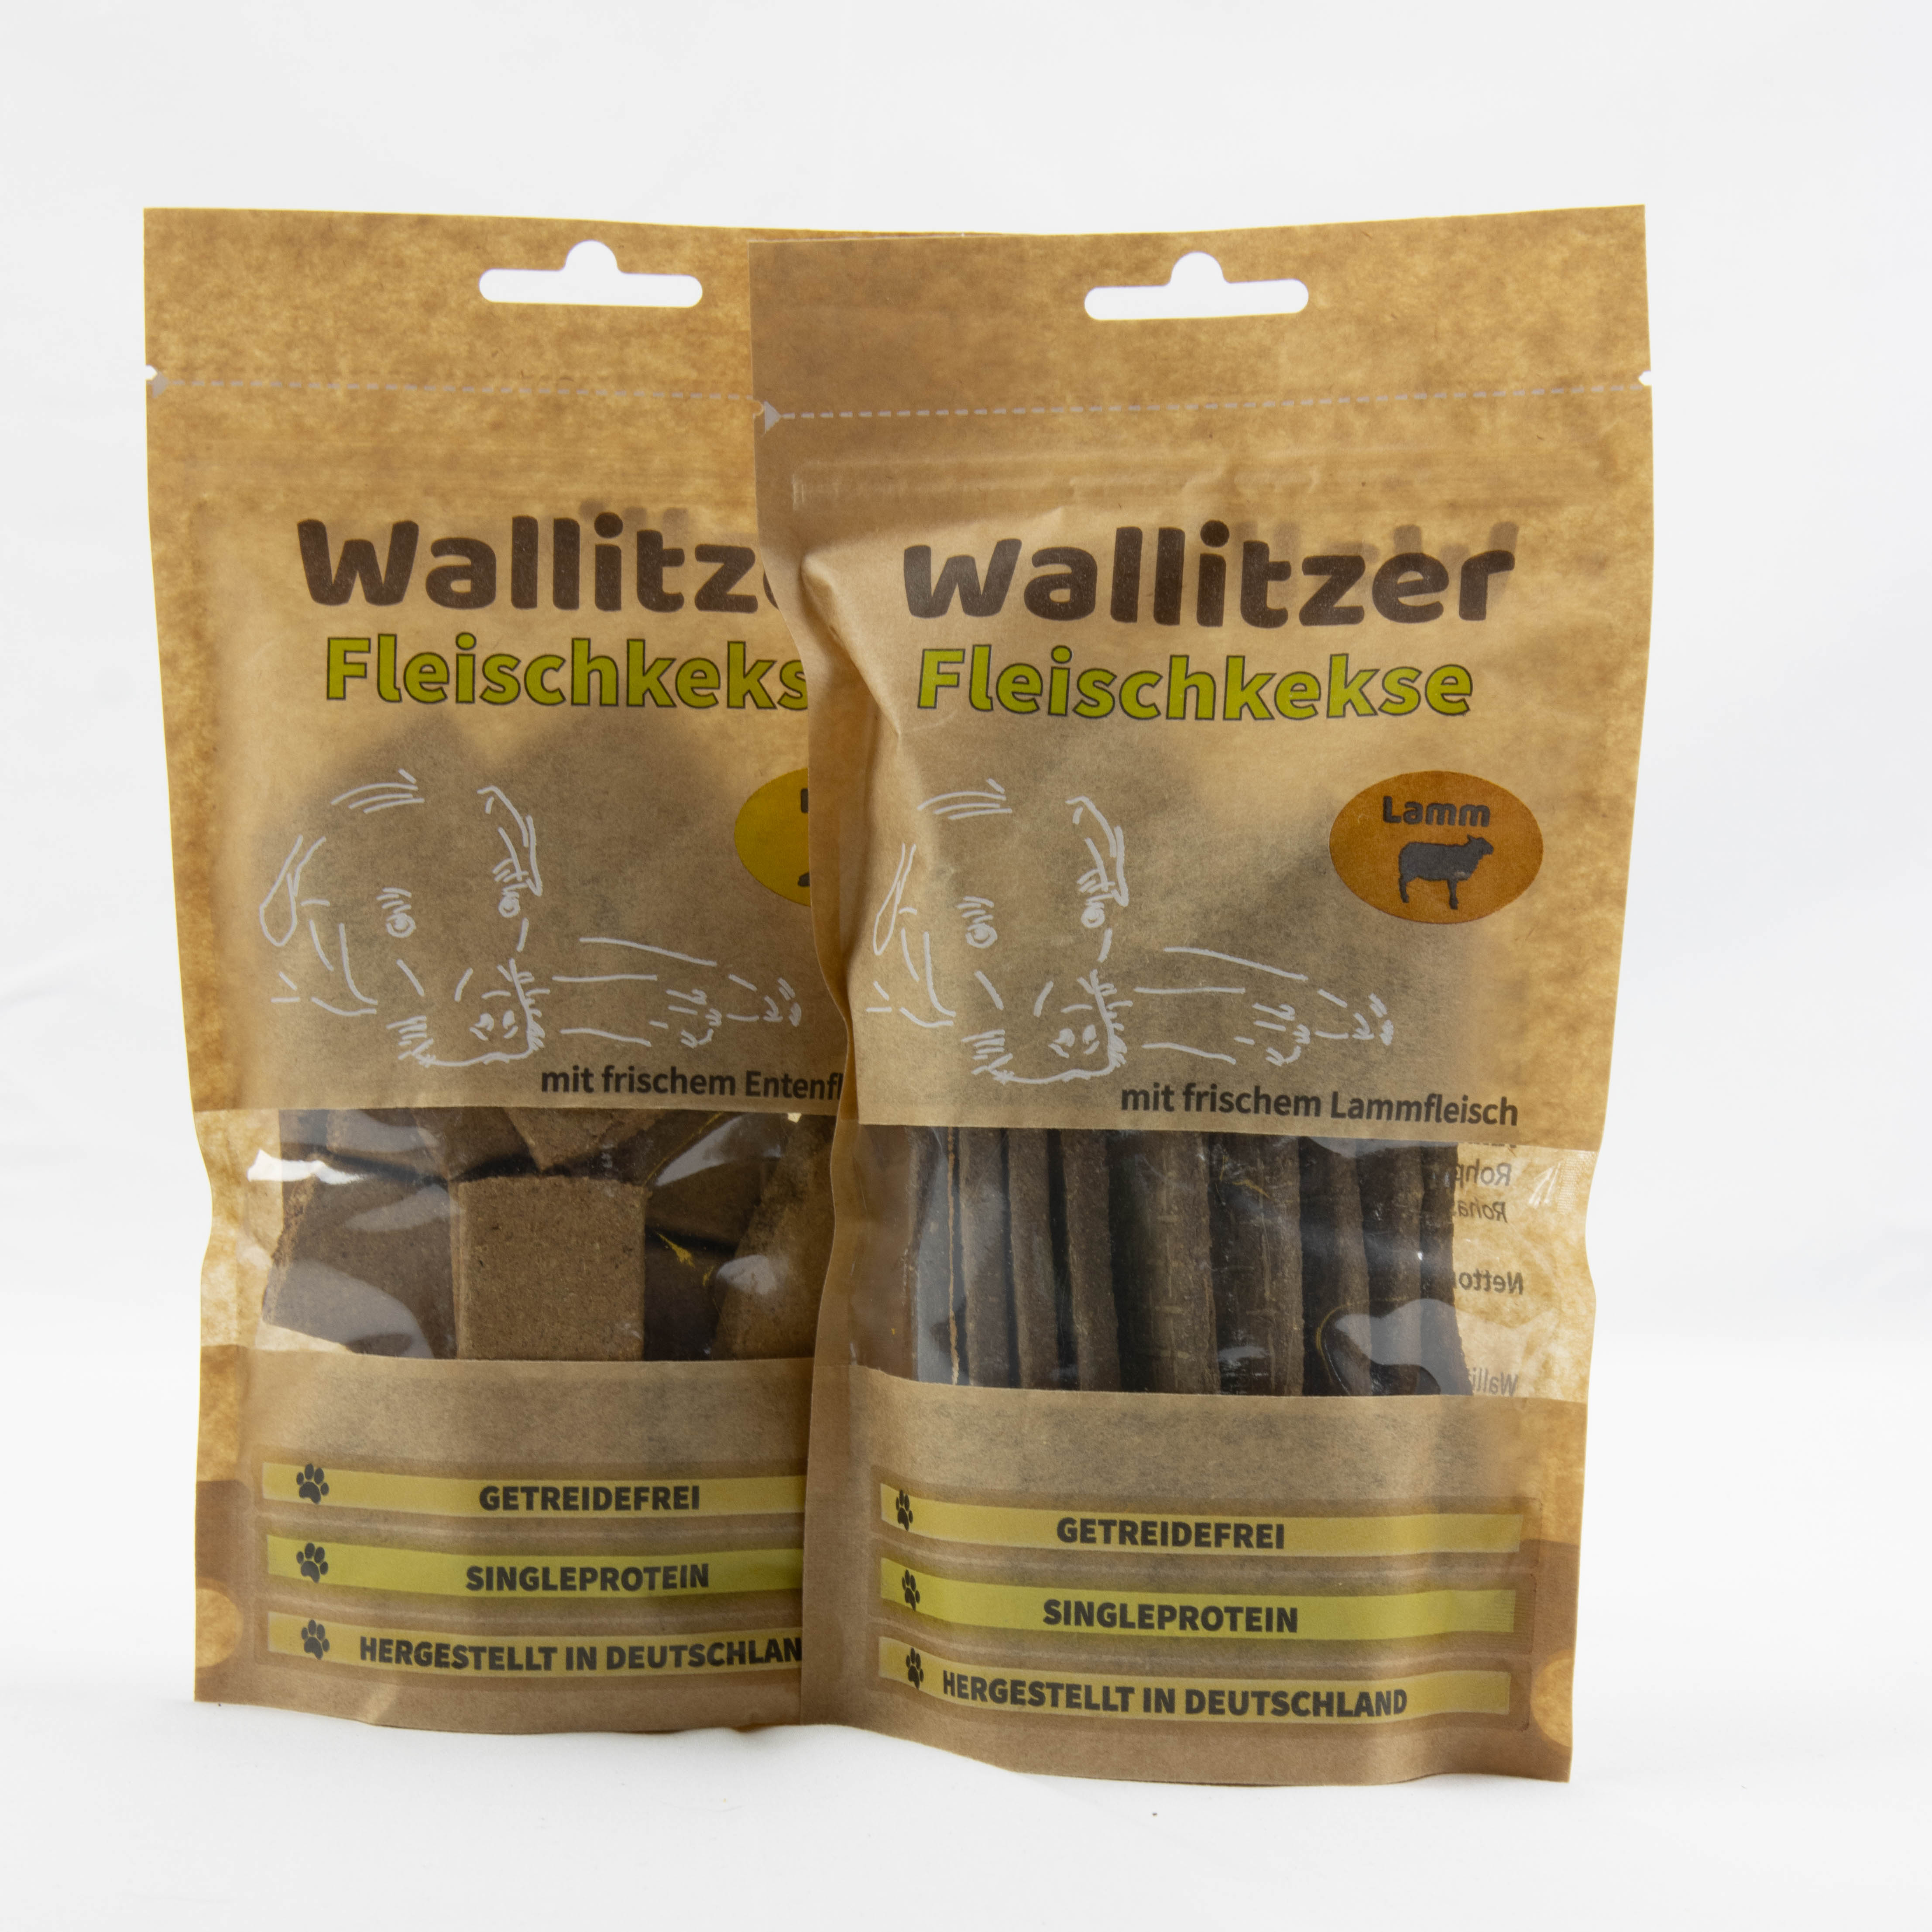 Wallitzer Fleischkekse (100% Fleisch)